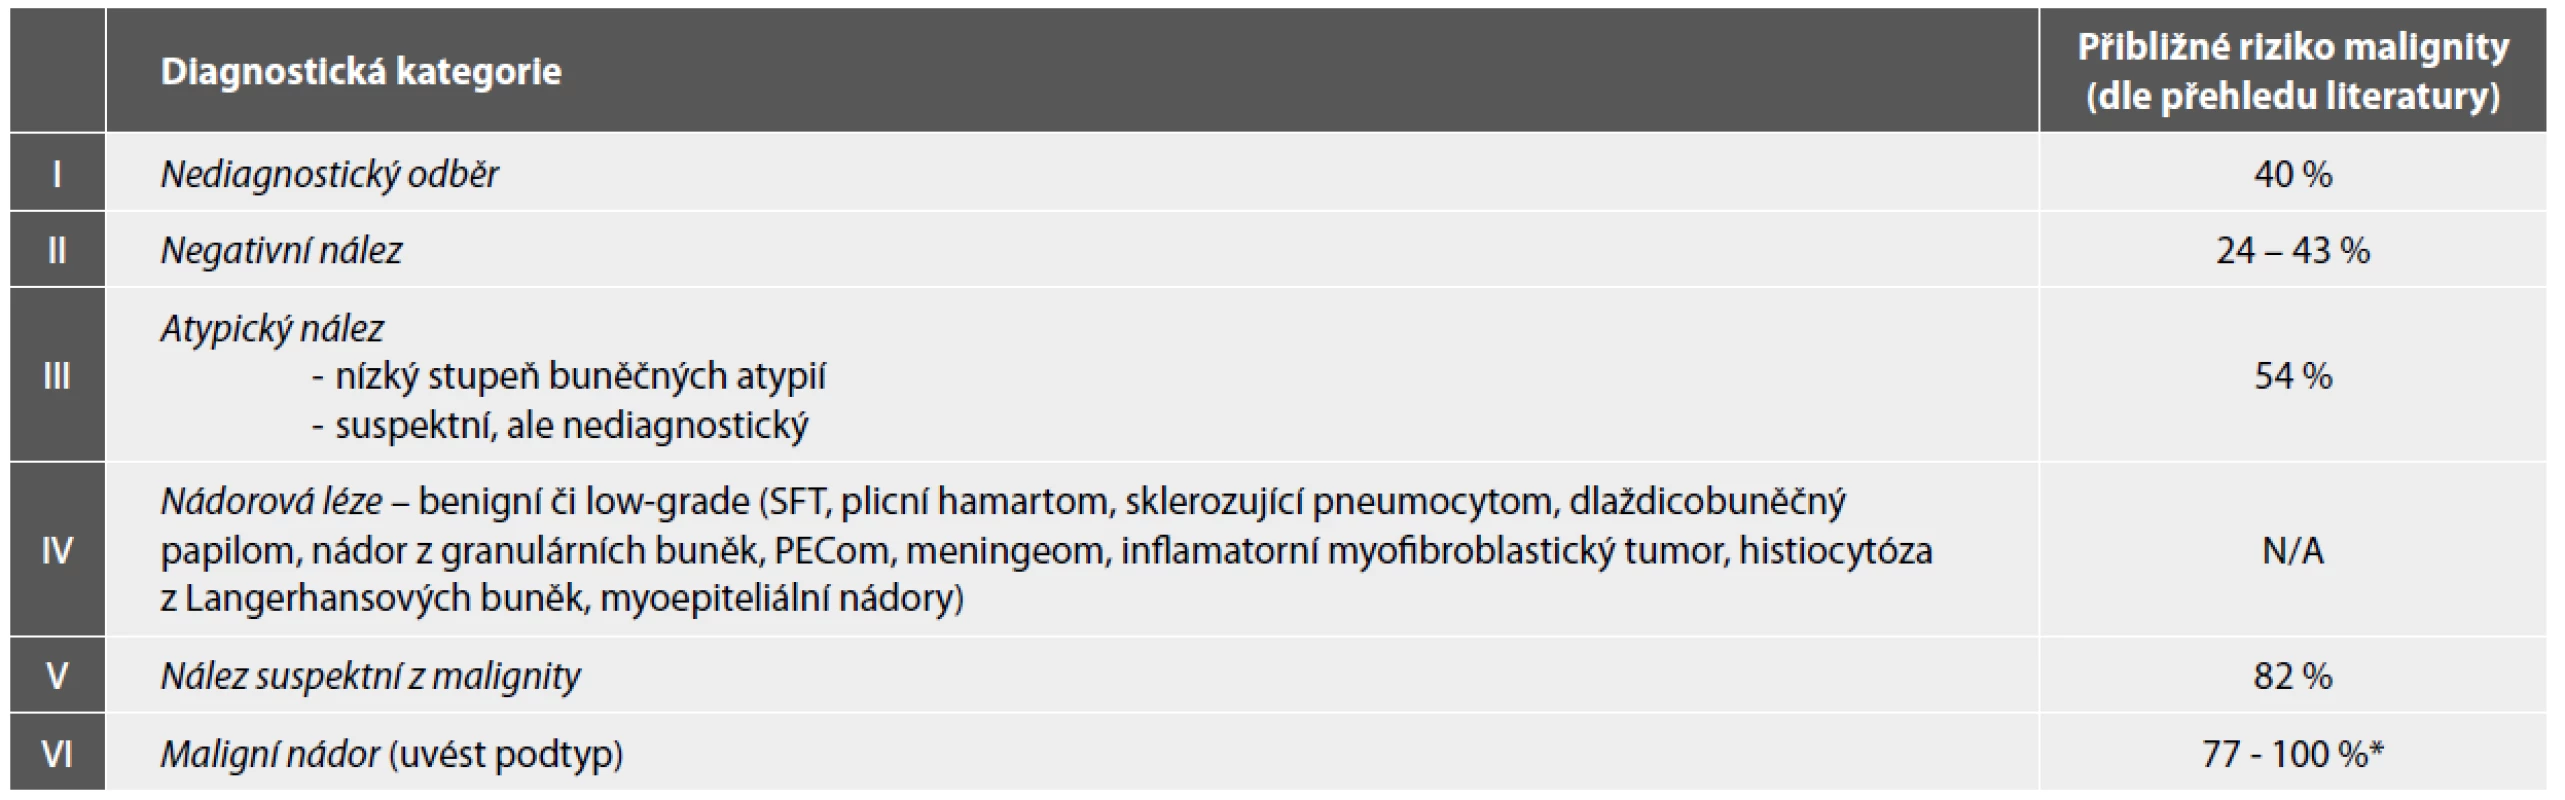 Diagnostické kategorie navržené Papanicolaouovou cytopatologickou společností pro oblast pneumologické cytologie, aktualizované v roce 2016.